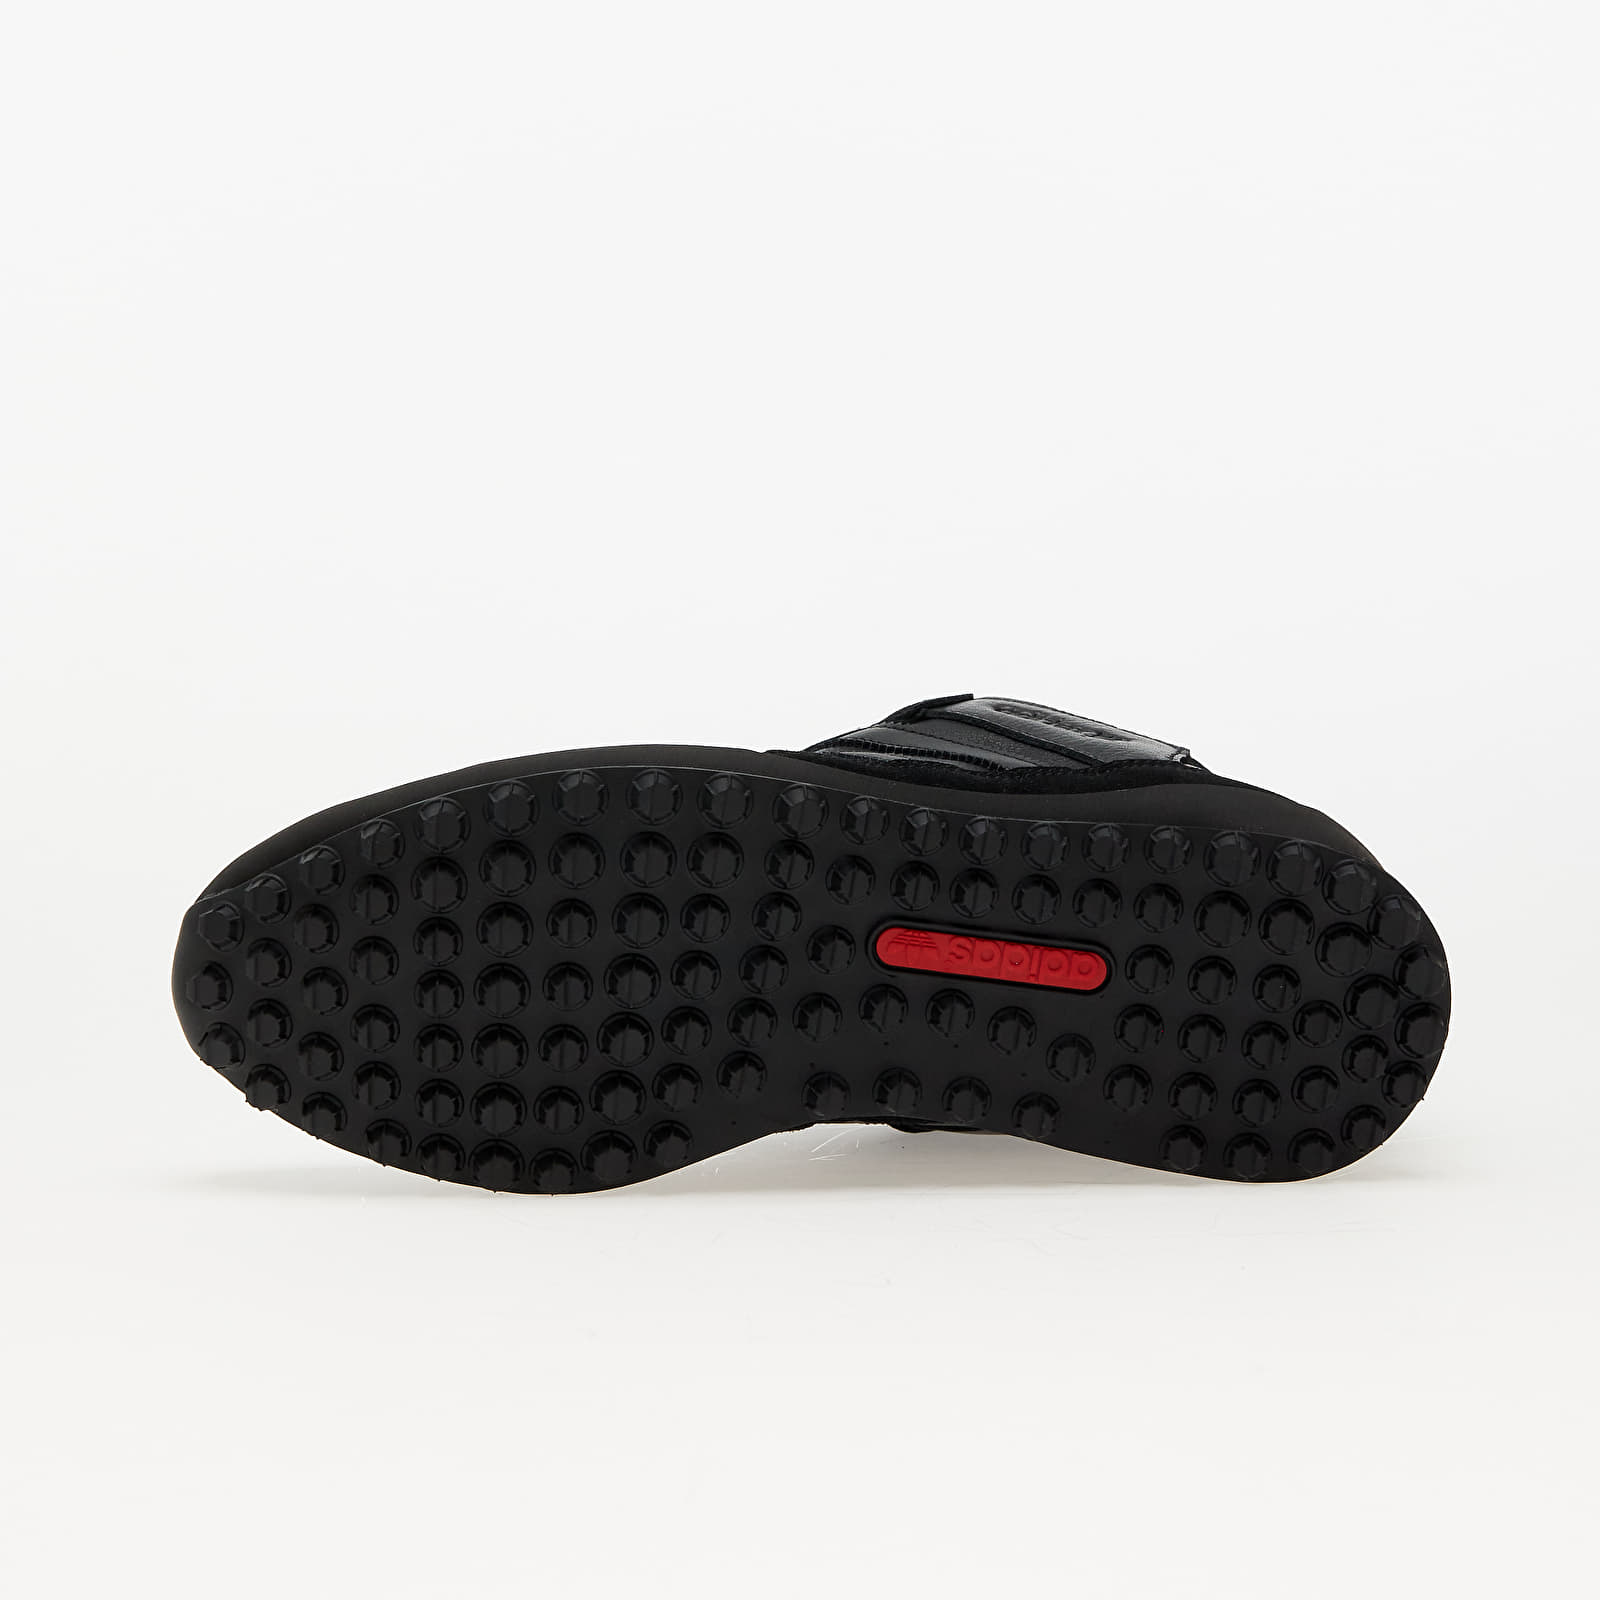 Poze adidas Hiaven Spzl Core Black/ Core Black/ Core Black FootShop